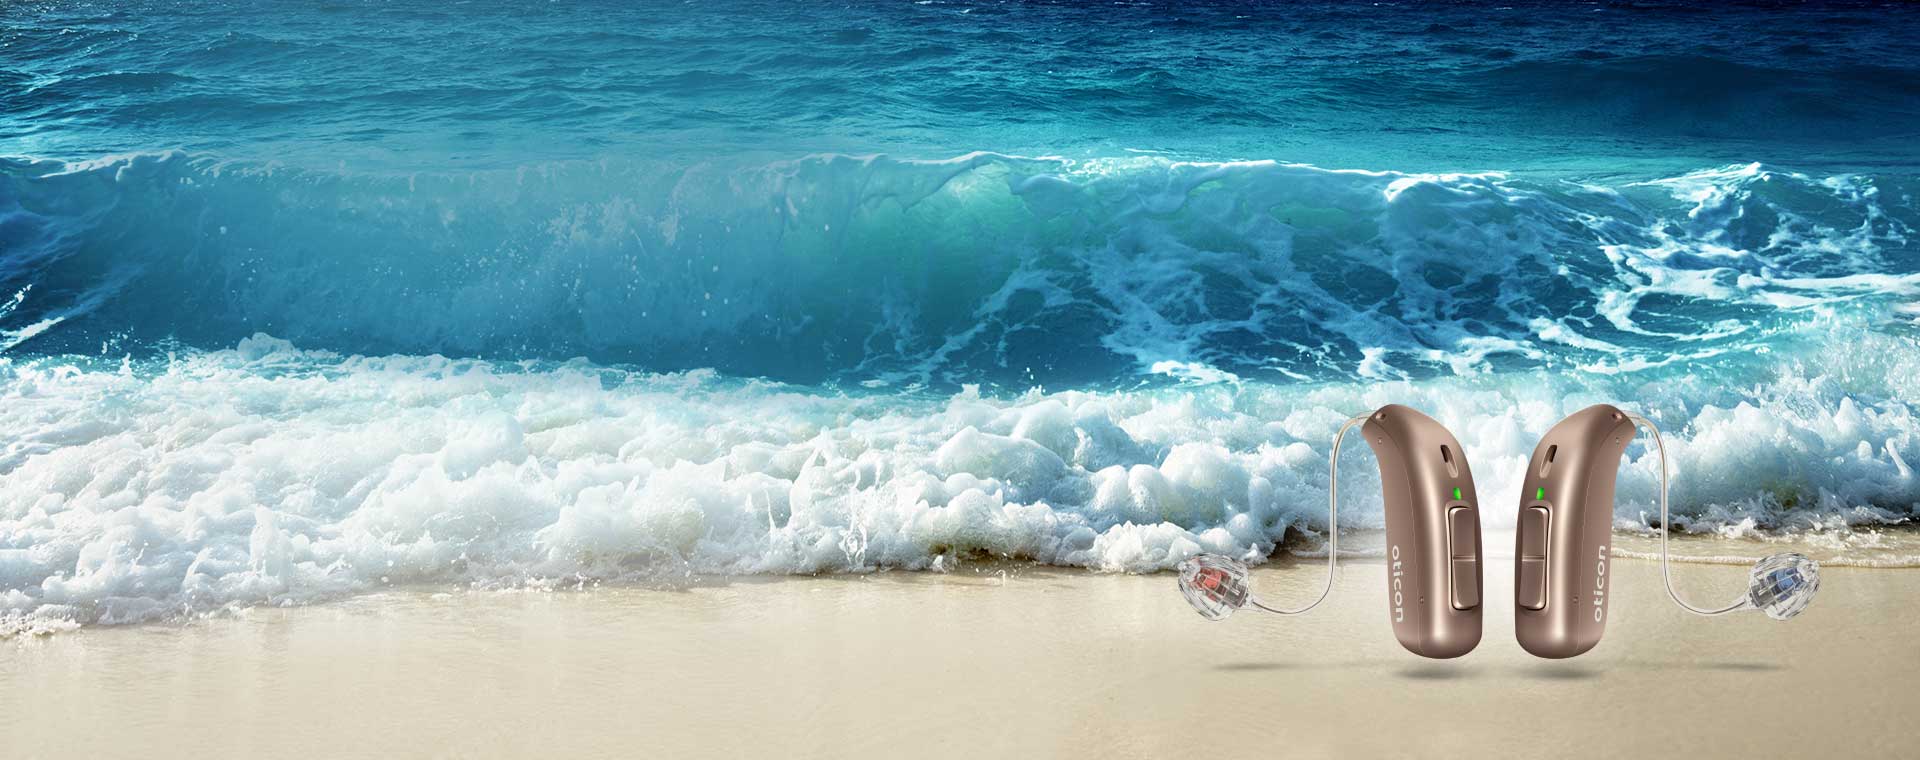 Afbeelding van twee hoorapparaten naast de zee